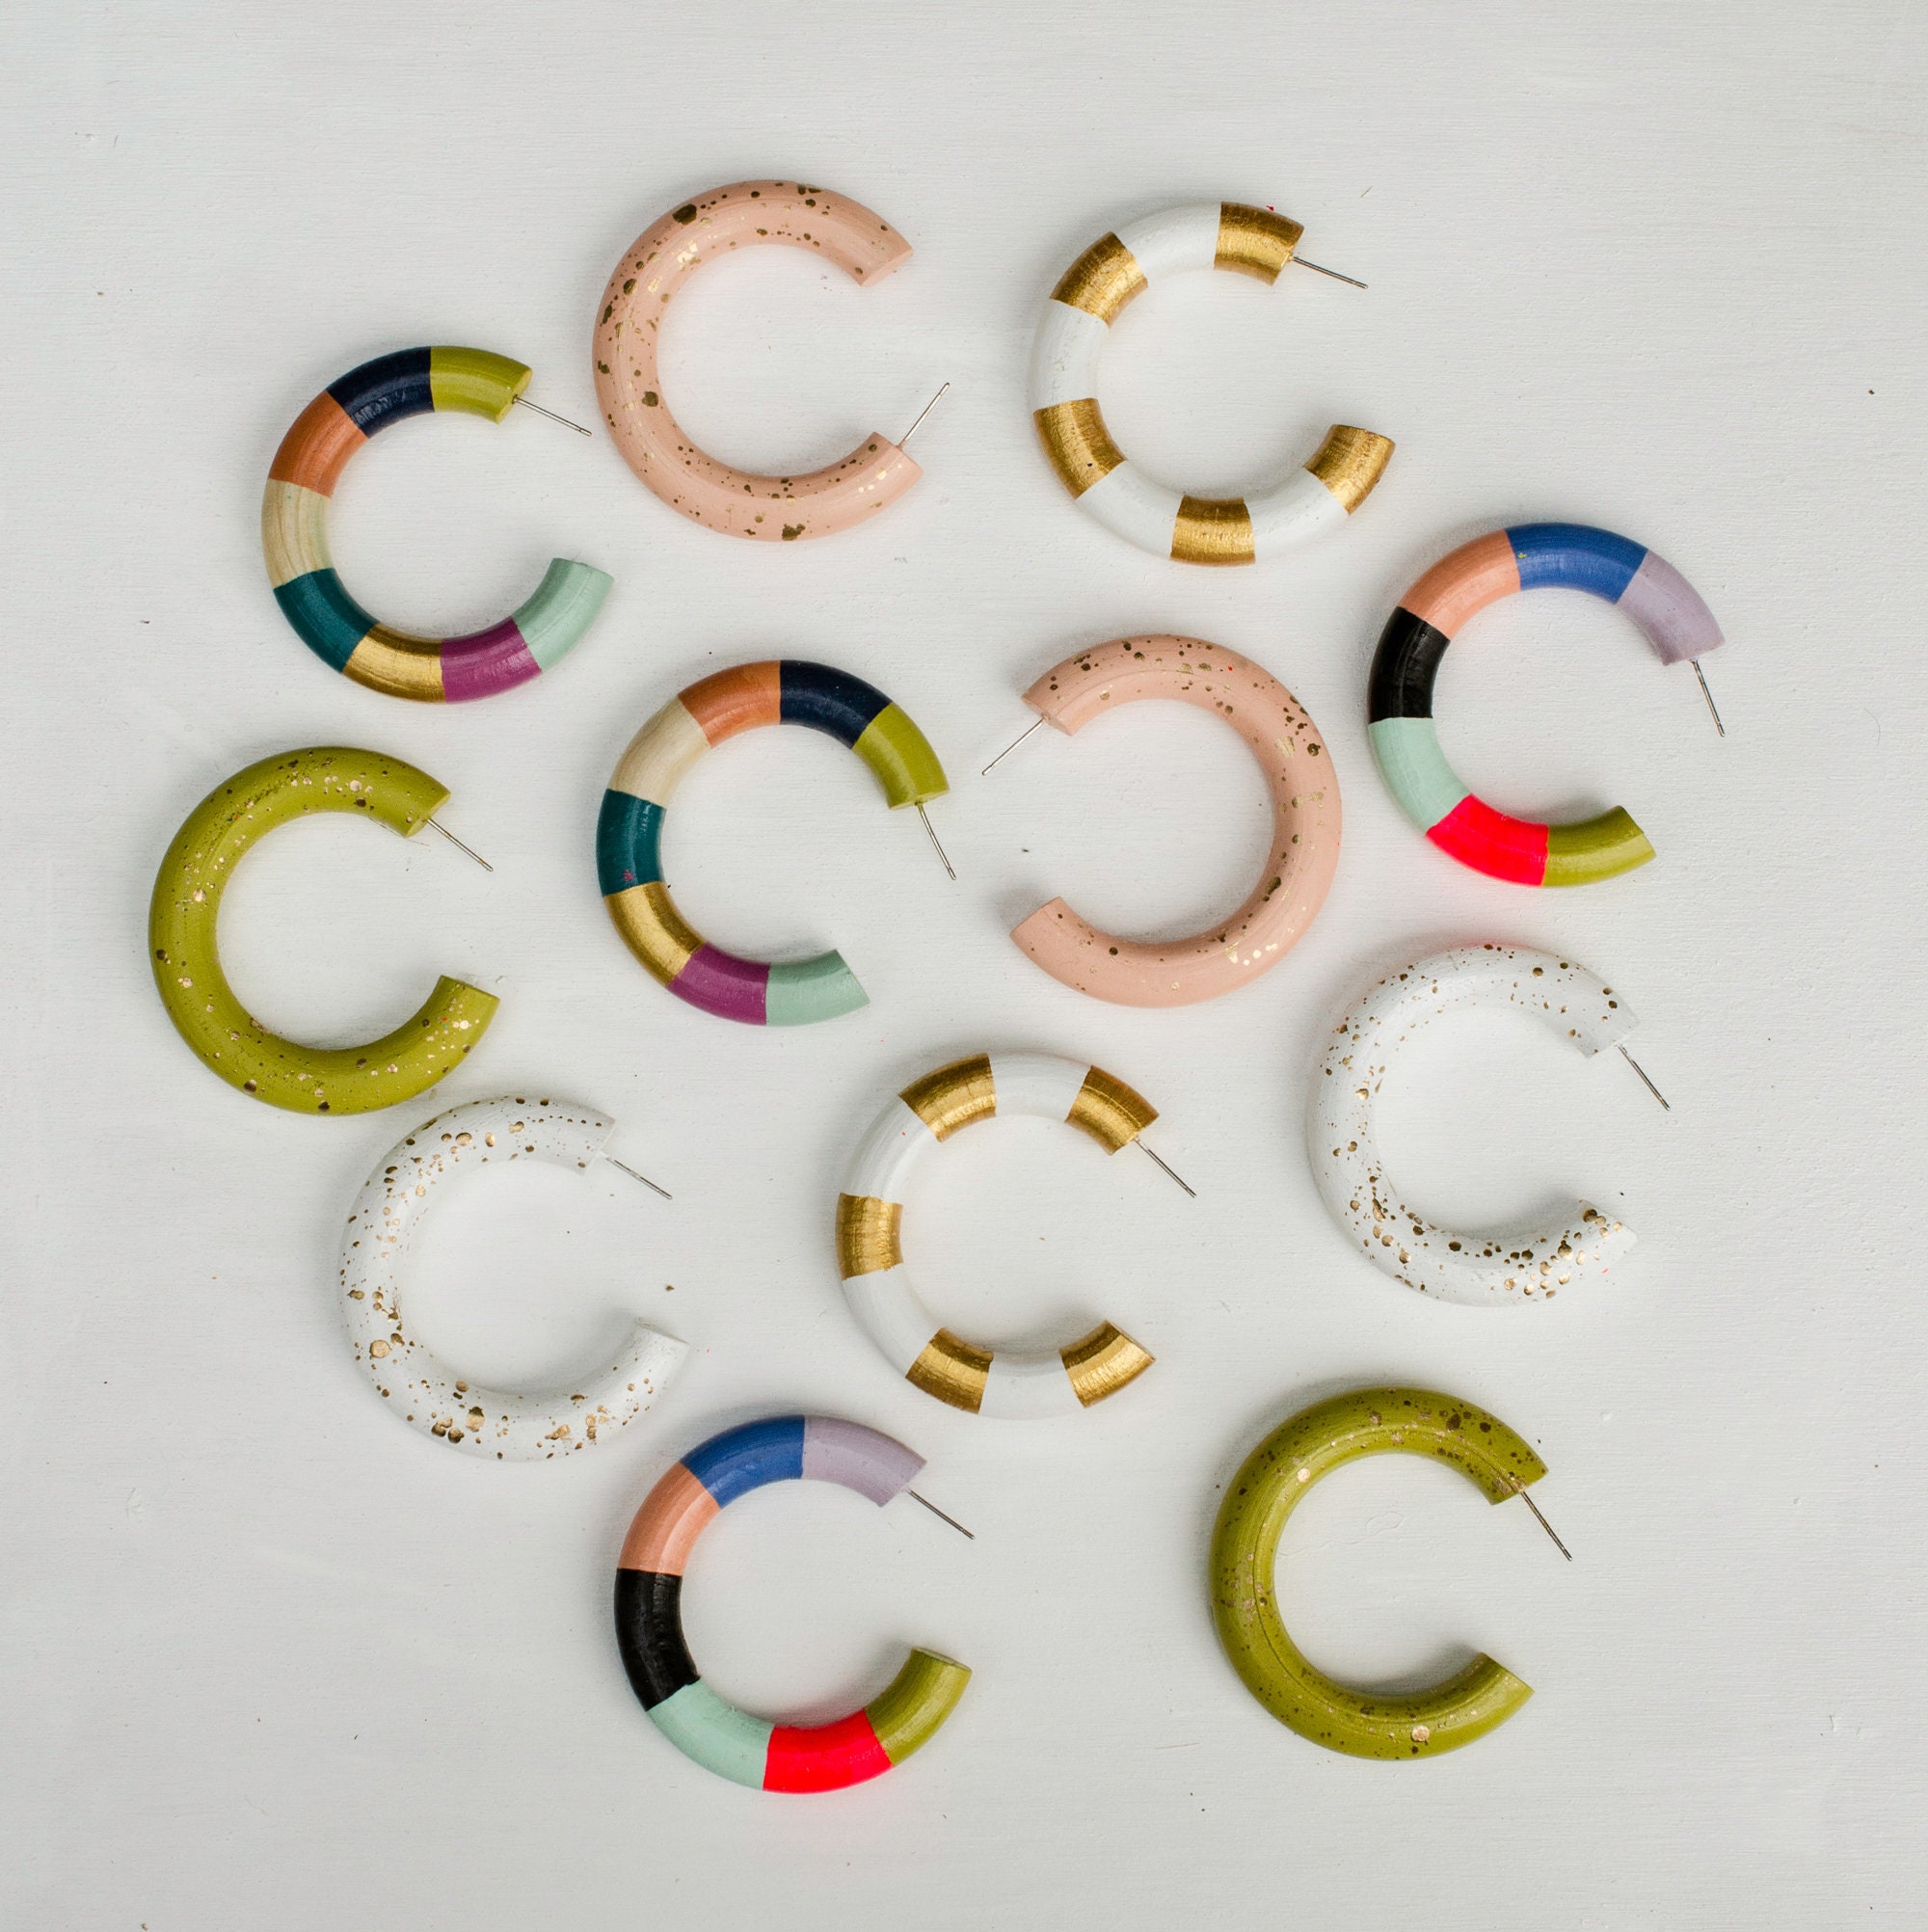 Colorful hoop earrings stripe hoops handpainted wooden | Etsy